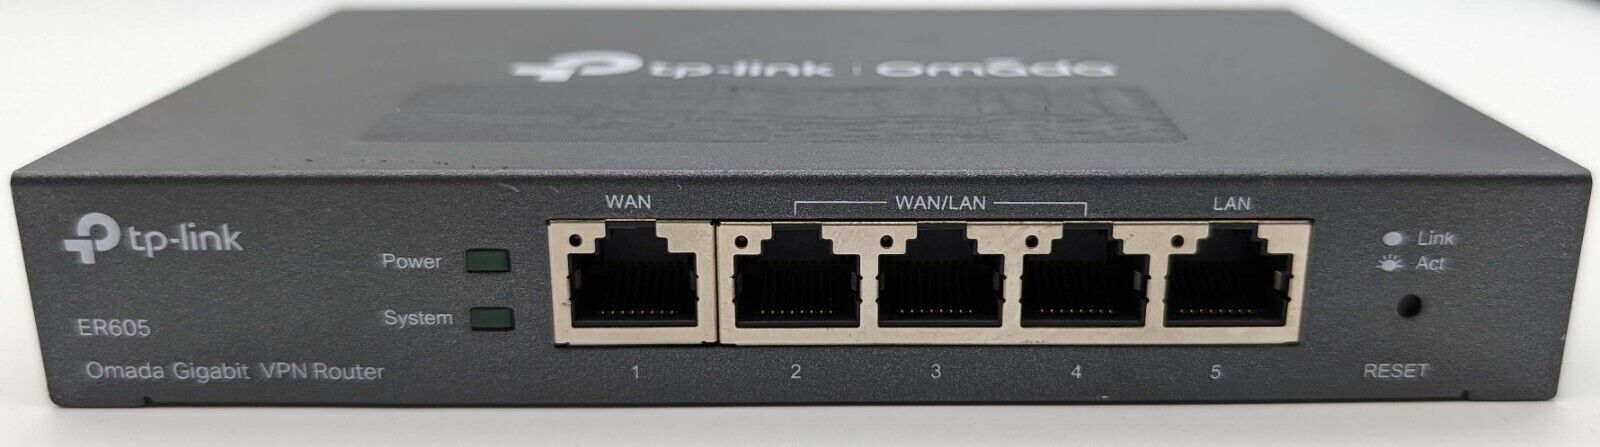 TP-Link Omada 5-Port Gigabit VPN Router ER605 *NO POWER SUPPLY INCLUDED